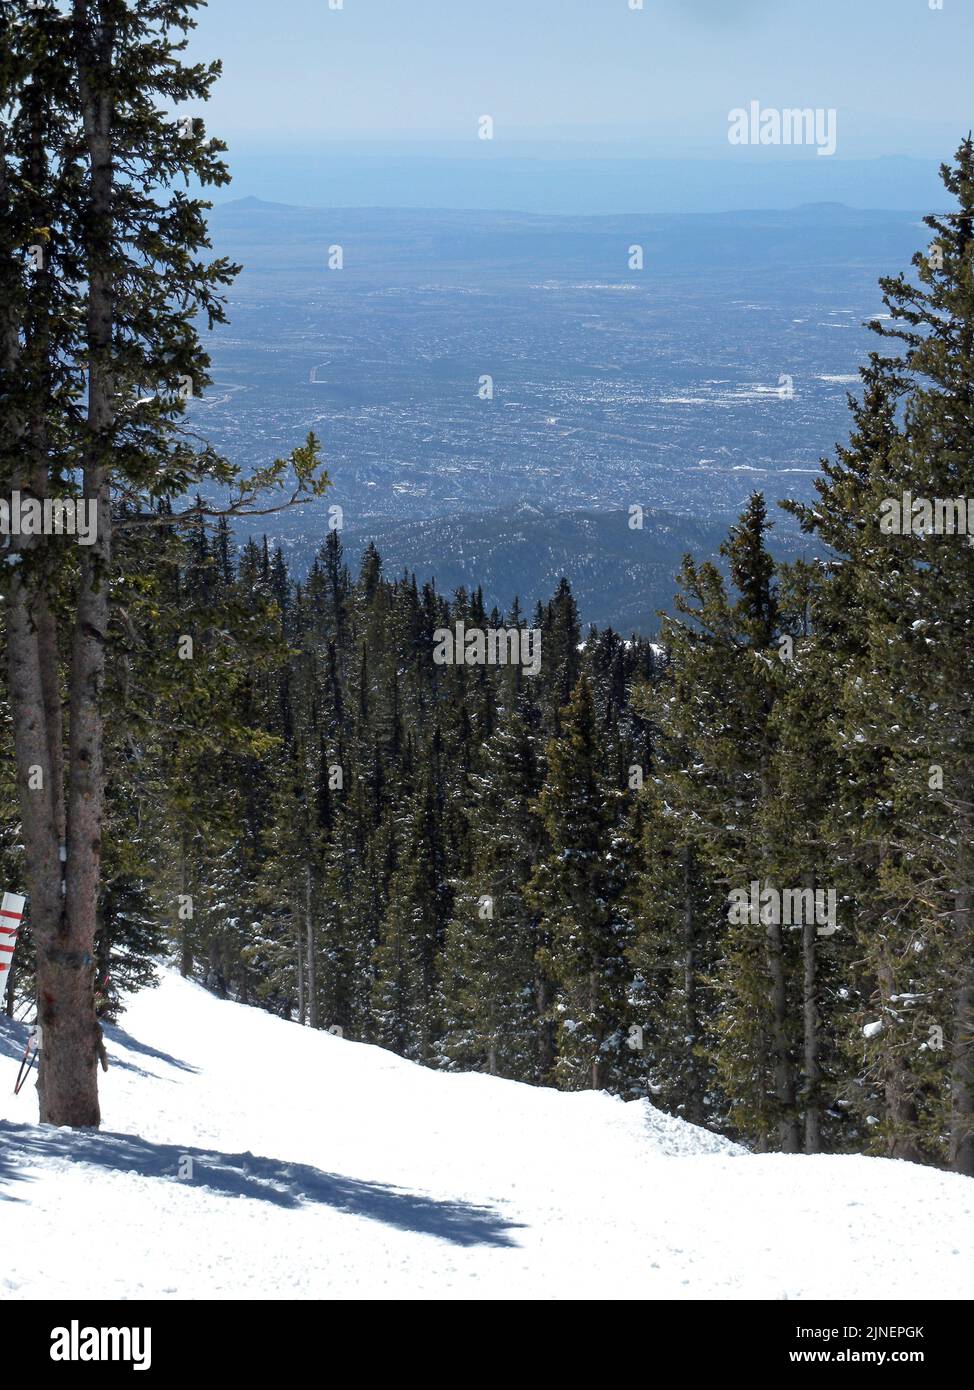 Santa Fe (2134 m) visto dal punto più alto della ski area di Santa Fe sul sentiero Millennium (3683 m), Sangre de Cristo range, New Mexico, USA, 2009 Foto Stock